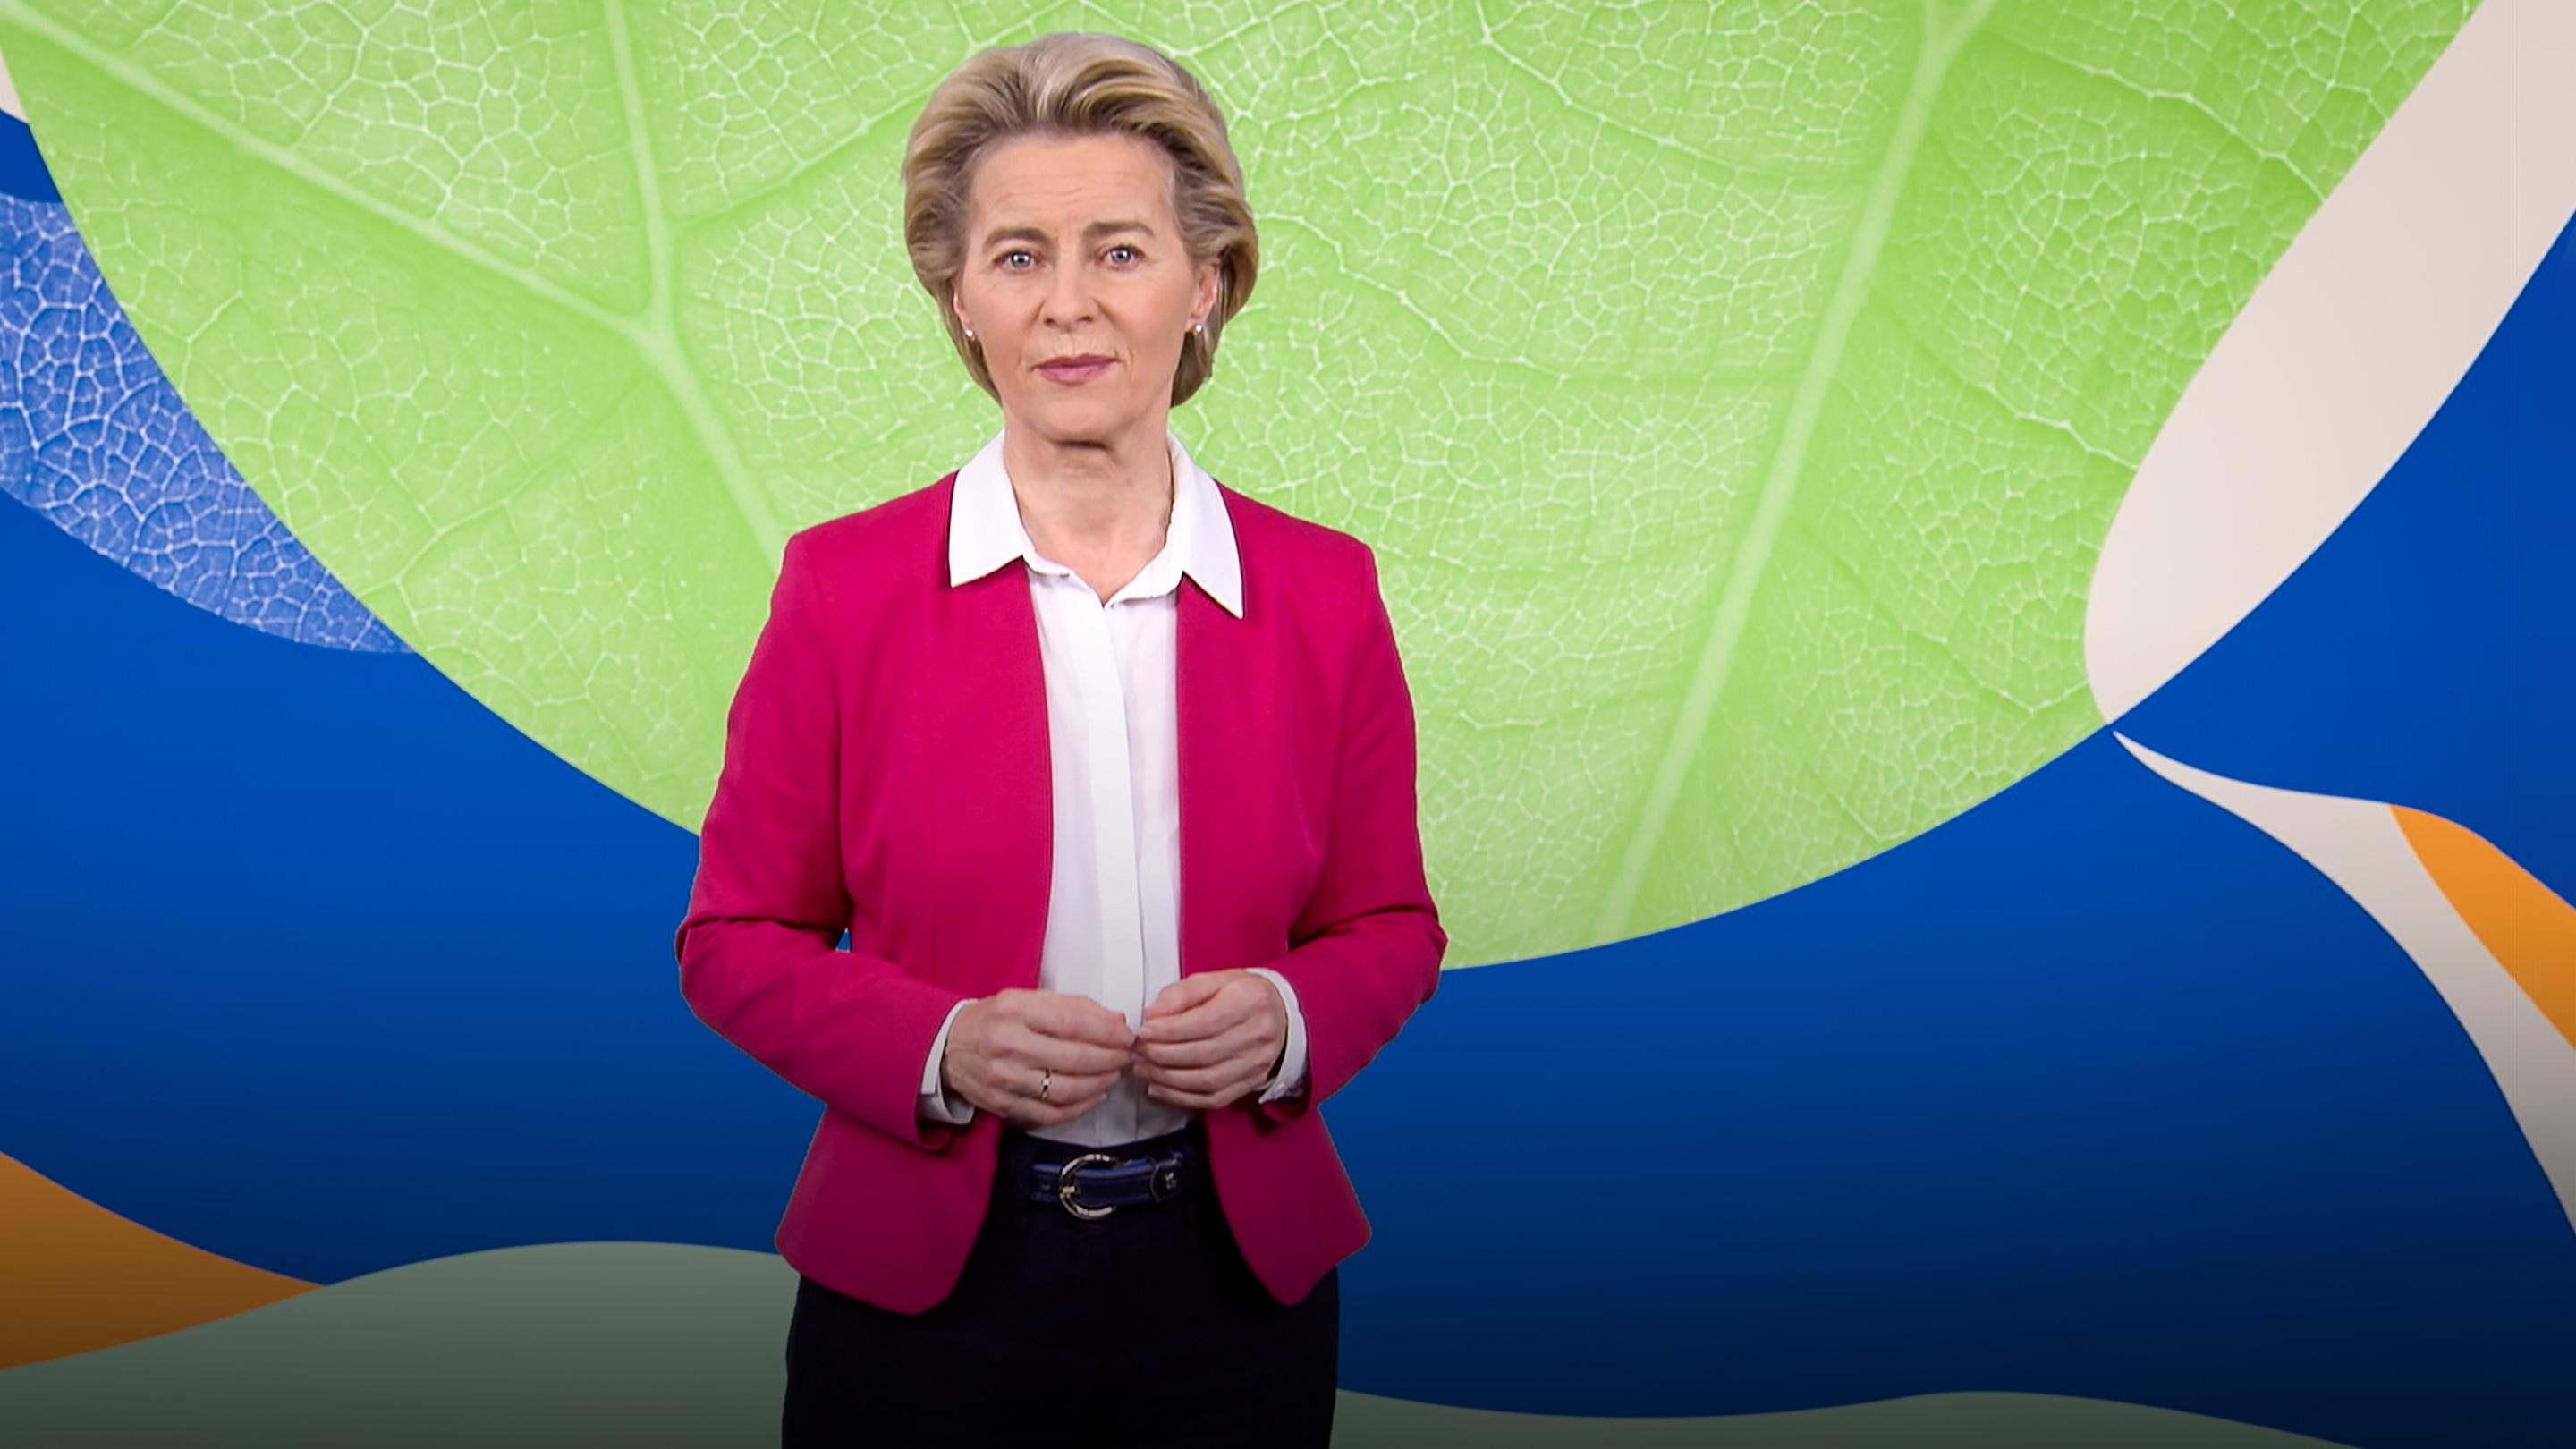 최초의 탄소 중립 대륙이 되고자 하는 유럽의 계획 | 우르술라 본 데르 레이엔(Ursula von der Leyen)